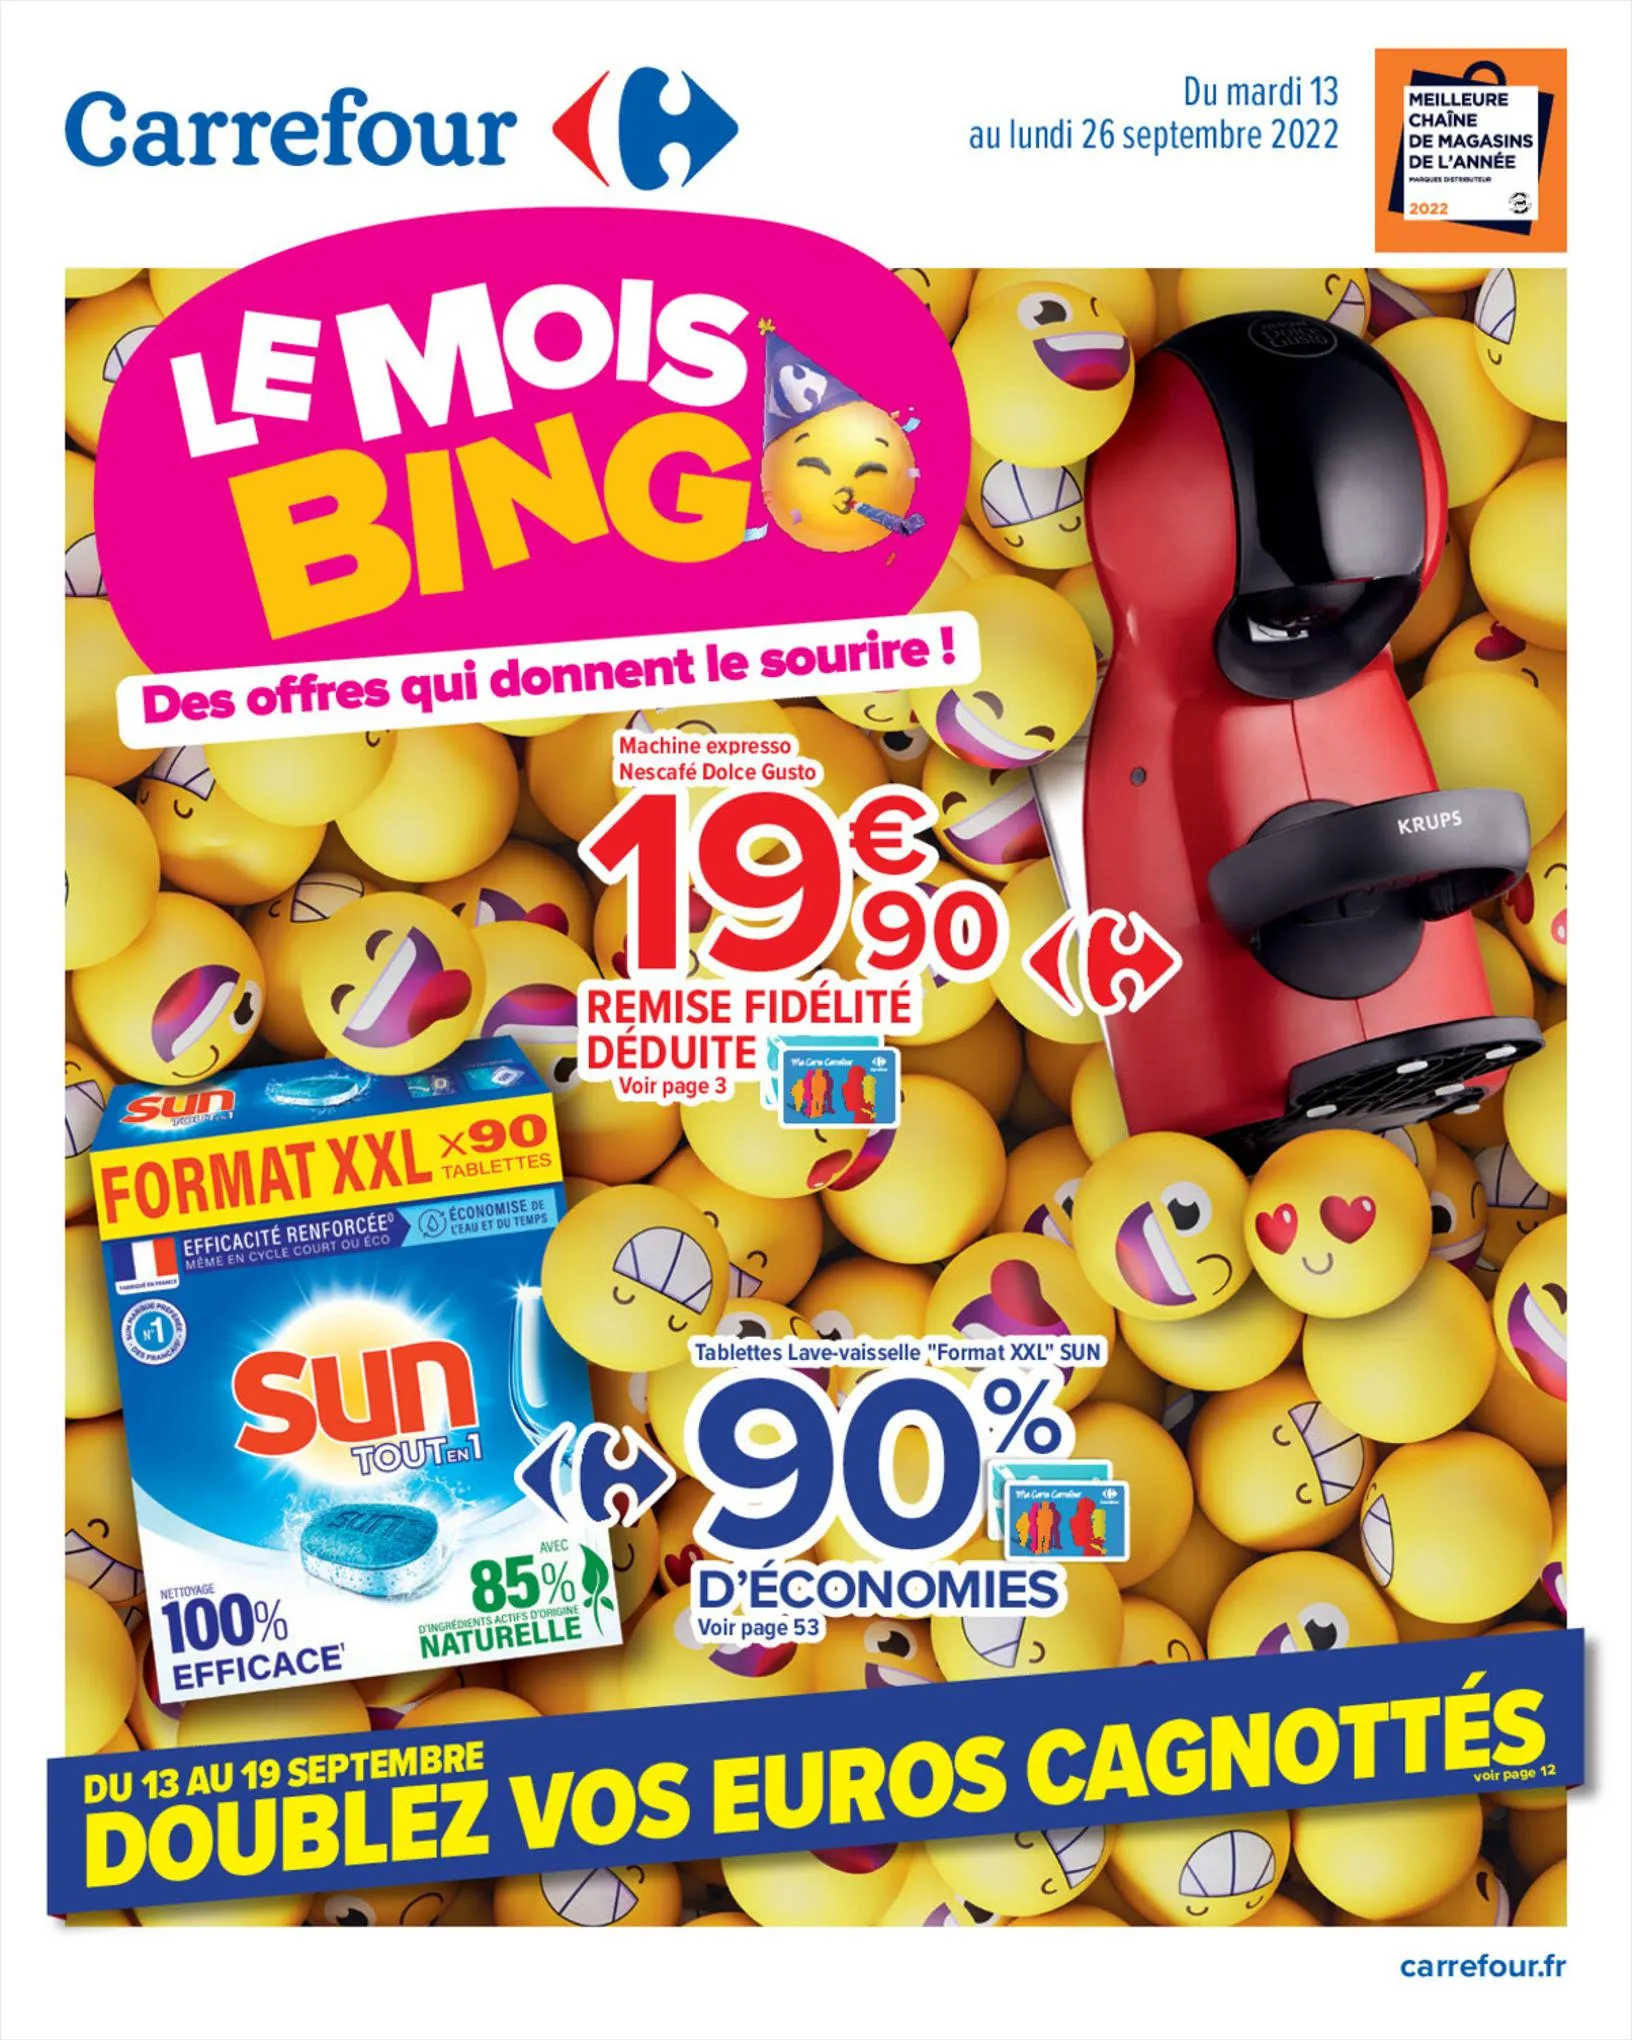 Catalogue Mois Bingo - Doublez vos euros cagnottés, page 00001